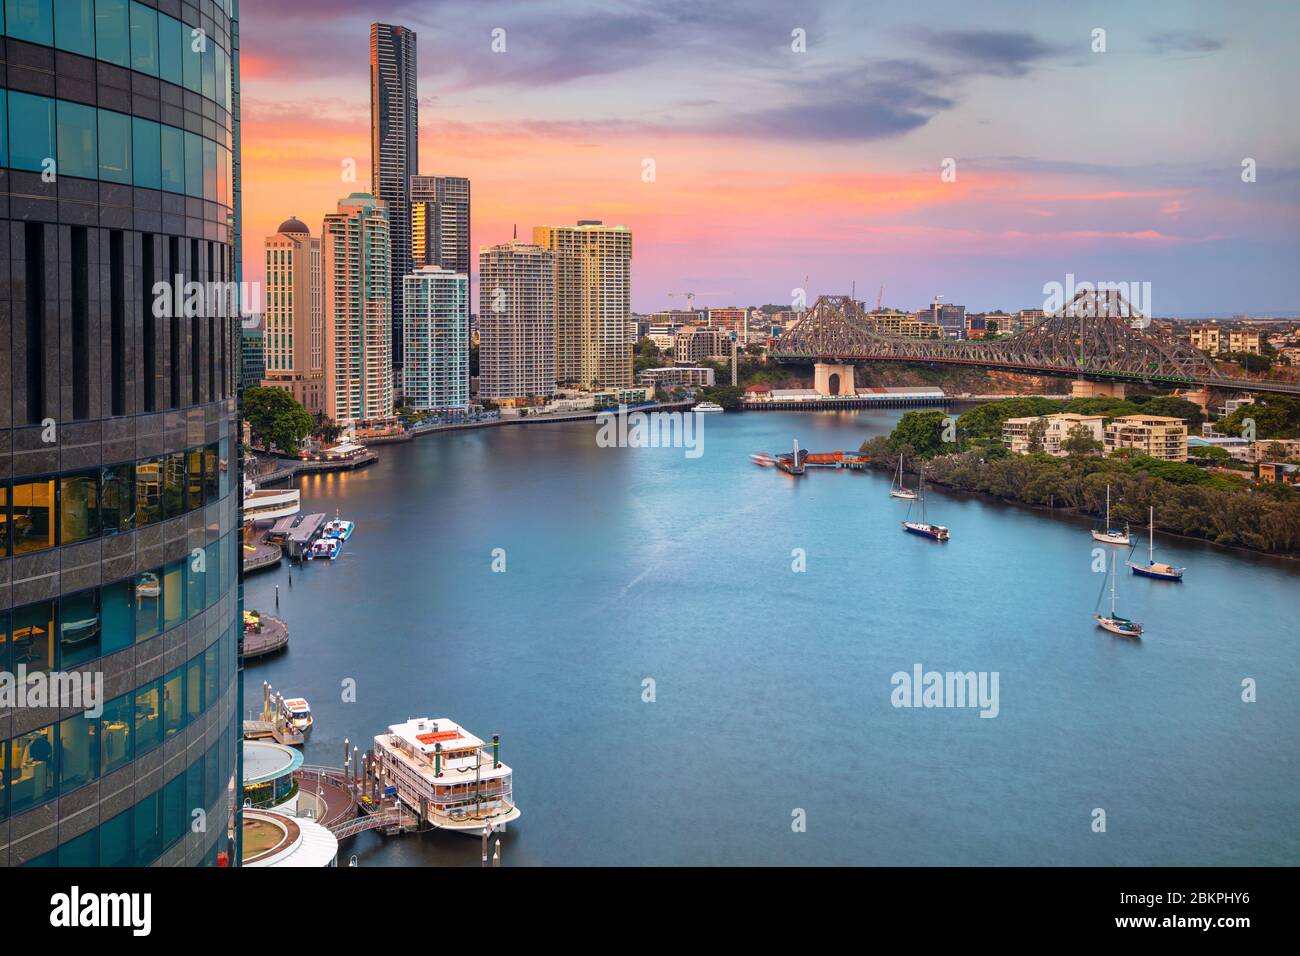 Brisbane. Cityscape image of Brisbane skyline, Australia during sunset. Stock Photo